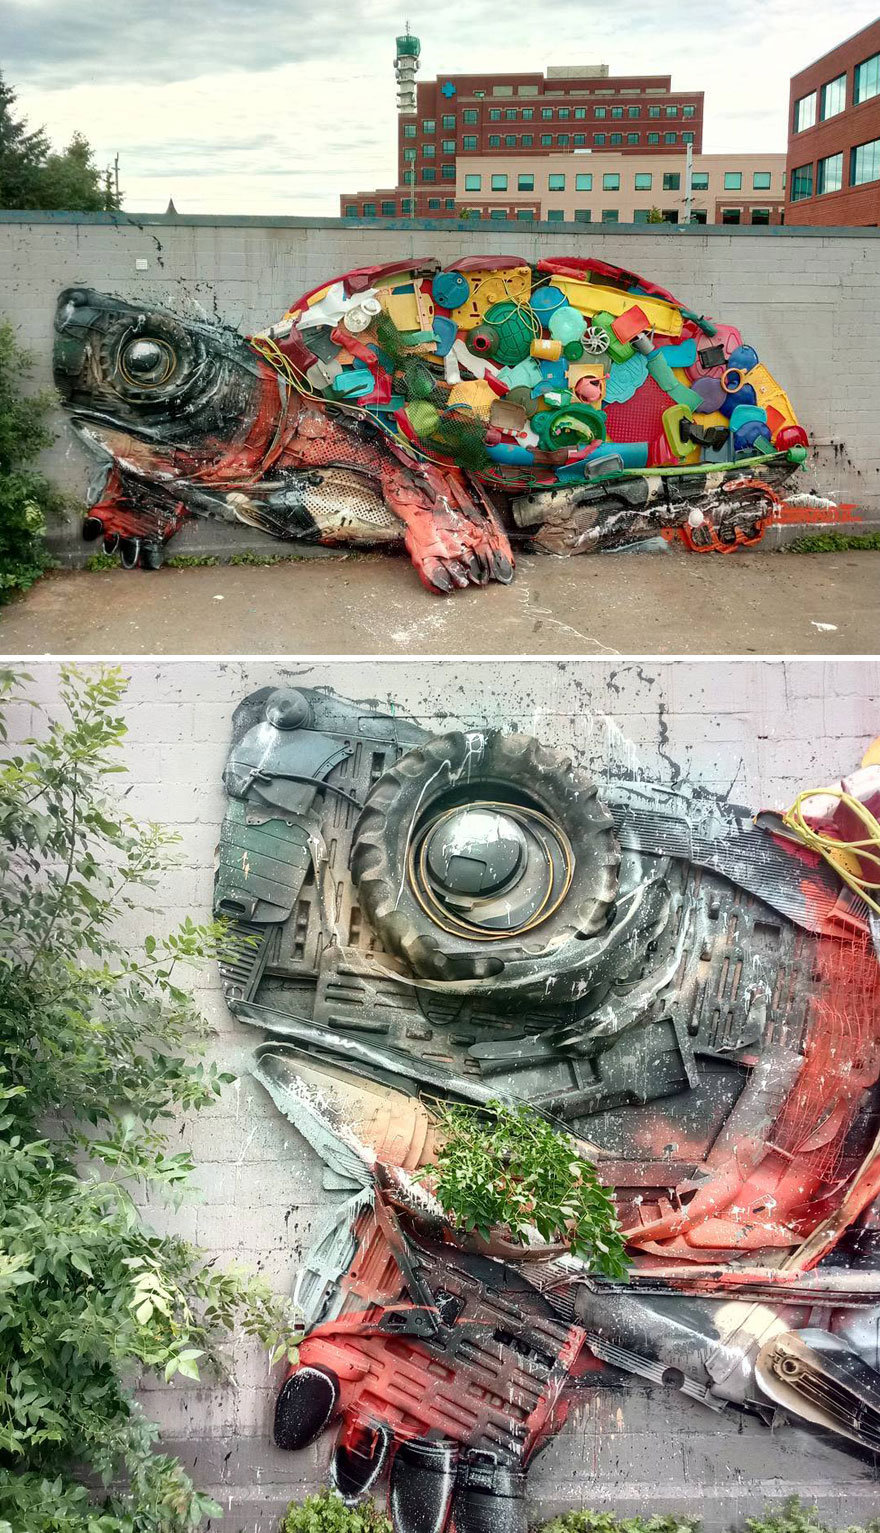 葡萄牙艺术家artur bordalo 的街头涂鸦装置艺术,用废物在造表达保护